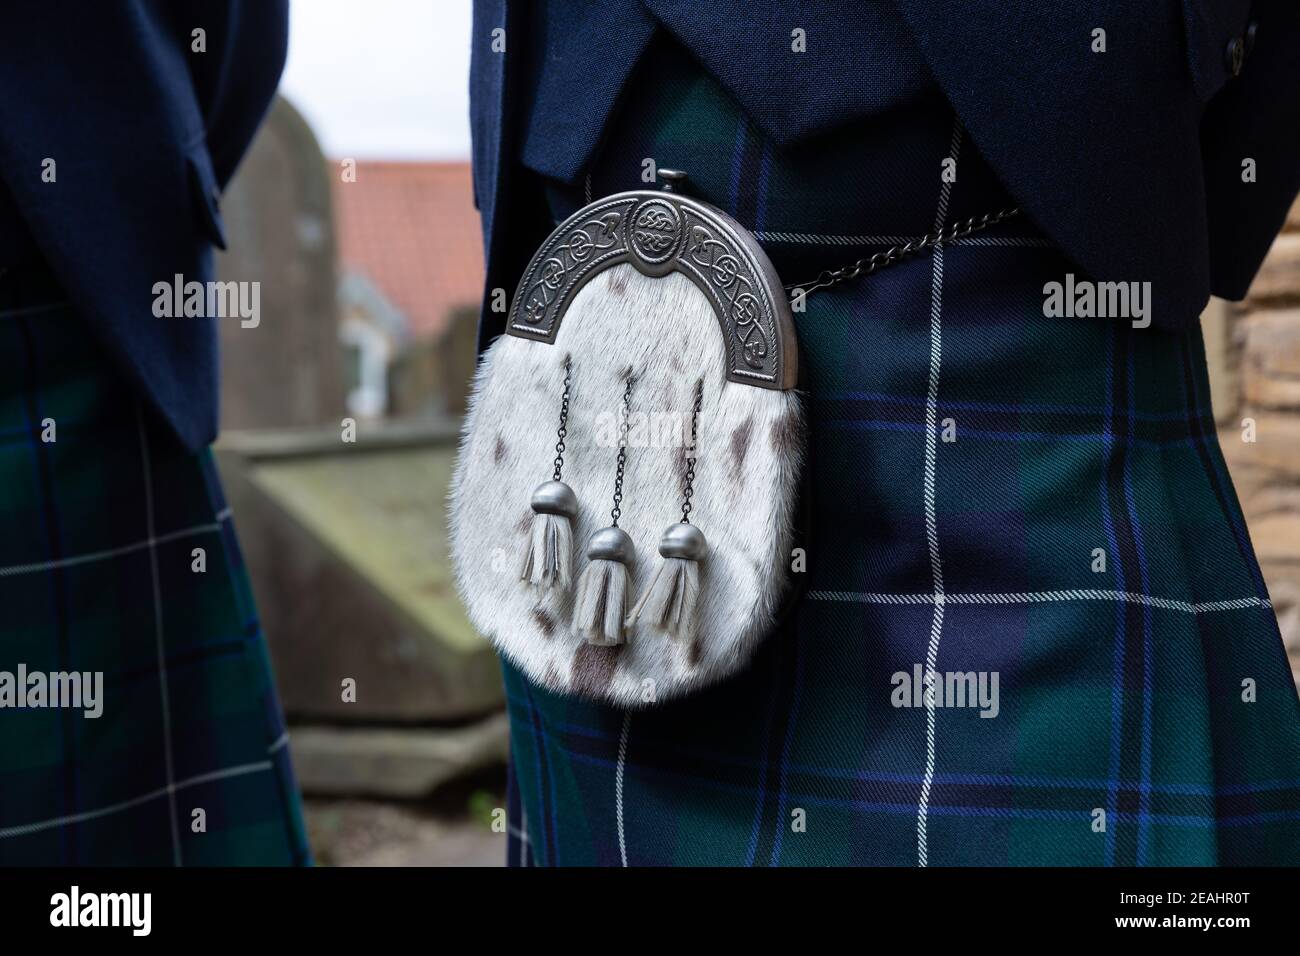 The Authentic Highland Kilt